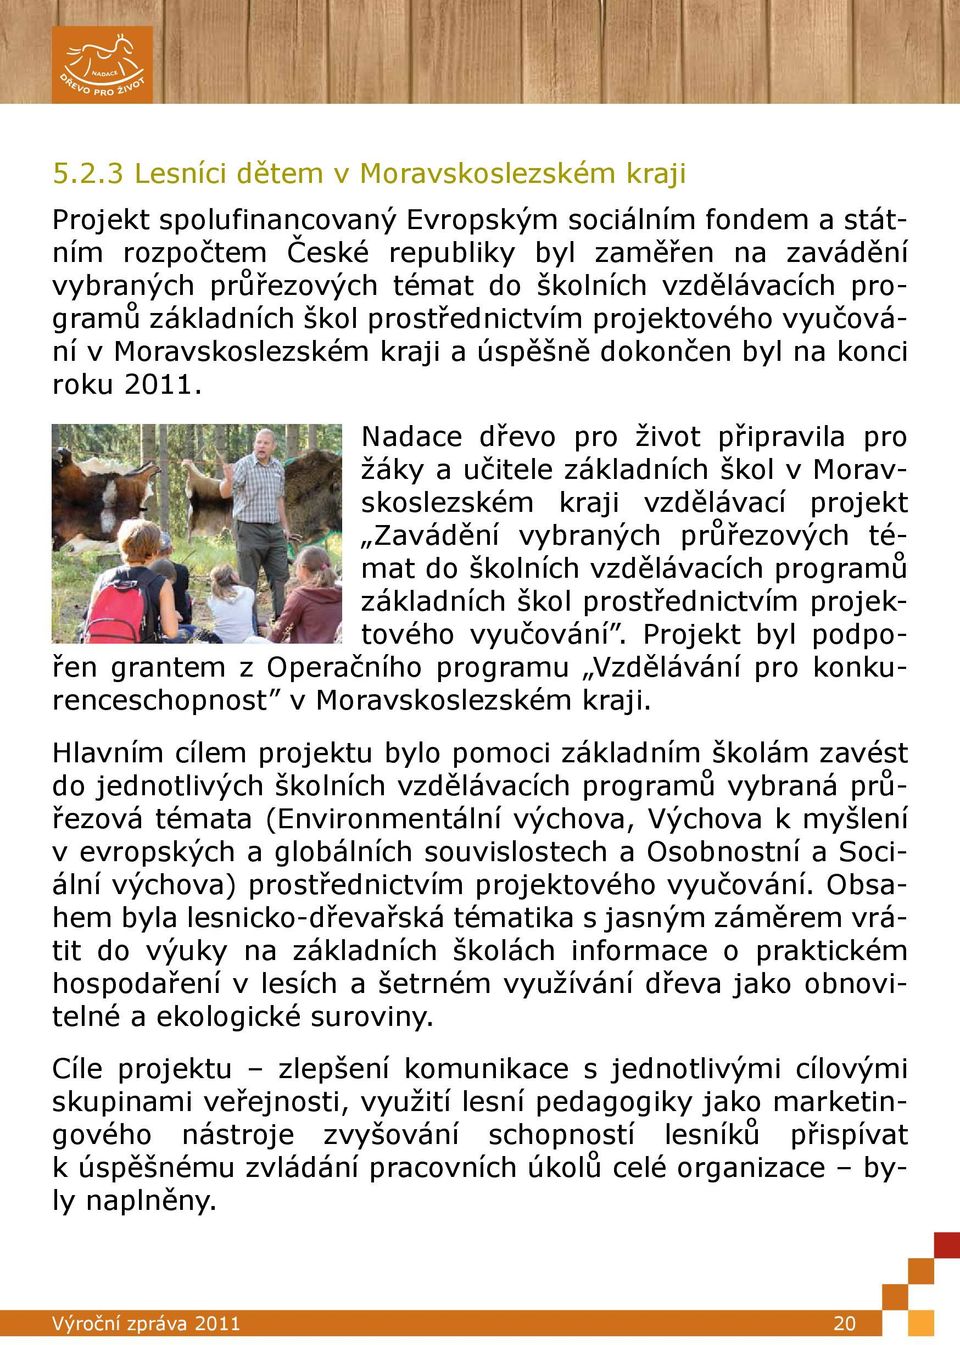 Nadace dřevo pro život připravila pro žáky a učitele základních škol v Moravskoslezském kraji vzdělávací projekt Zavádění vybraných průřezových témat do školních vzdělávacích programů základních škol